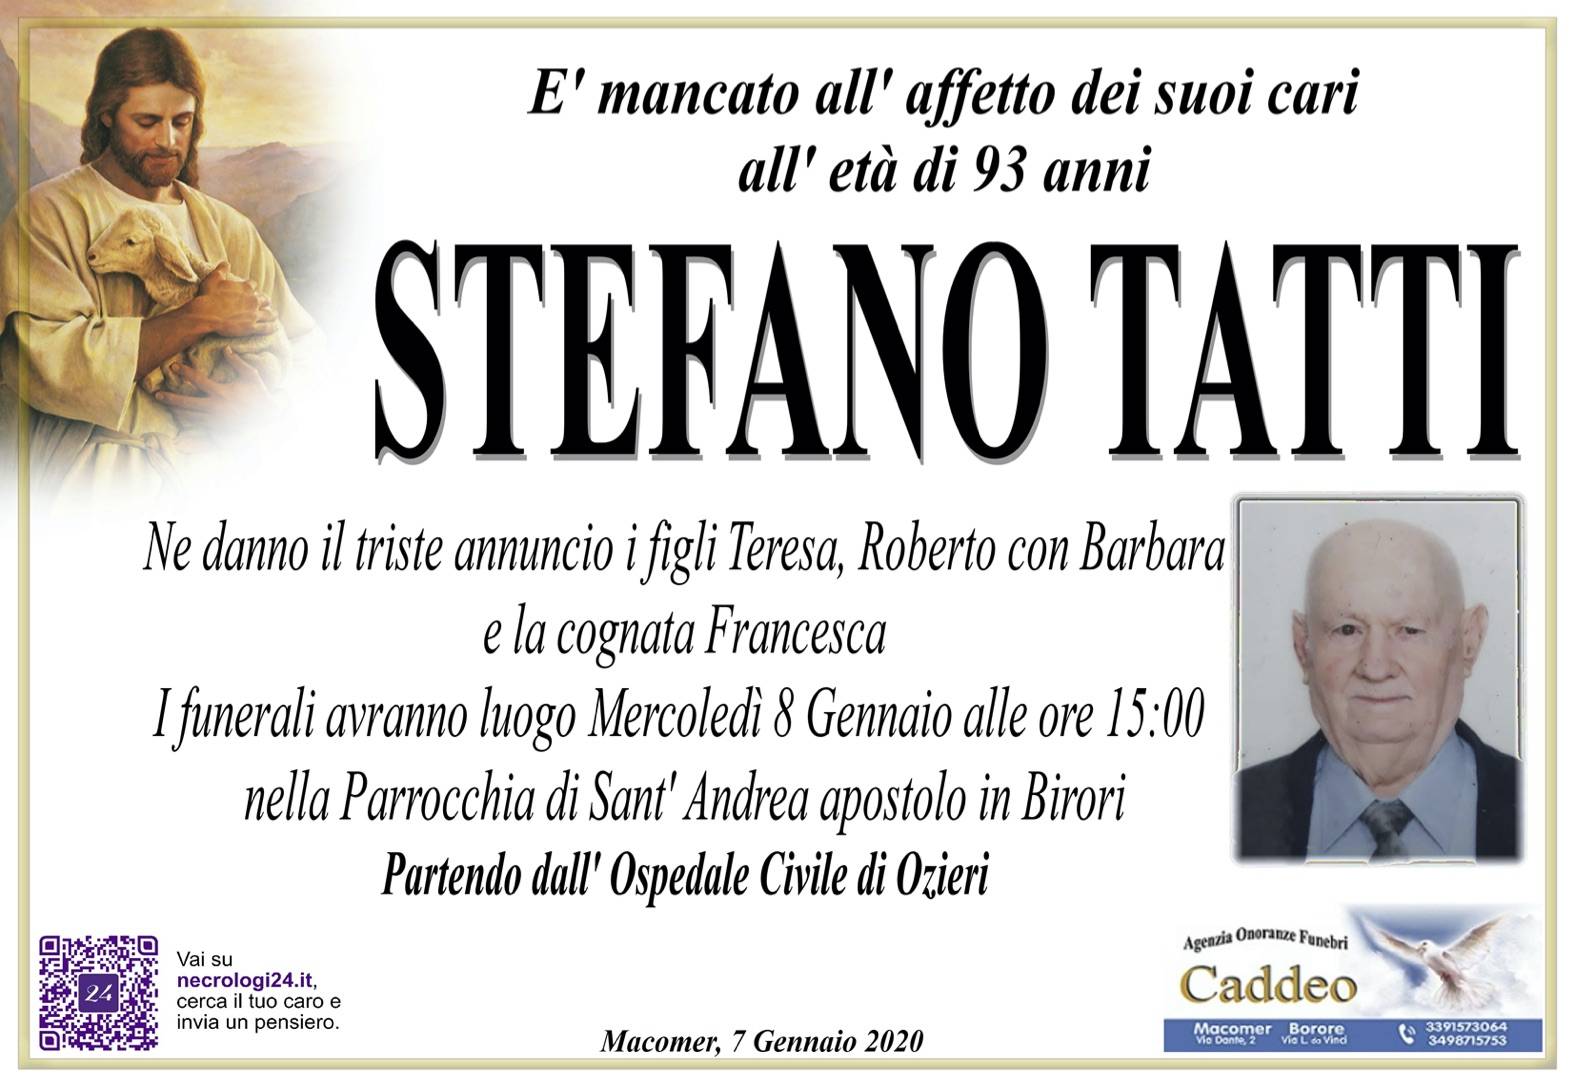 Stefano Tatti